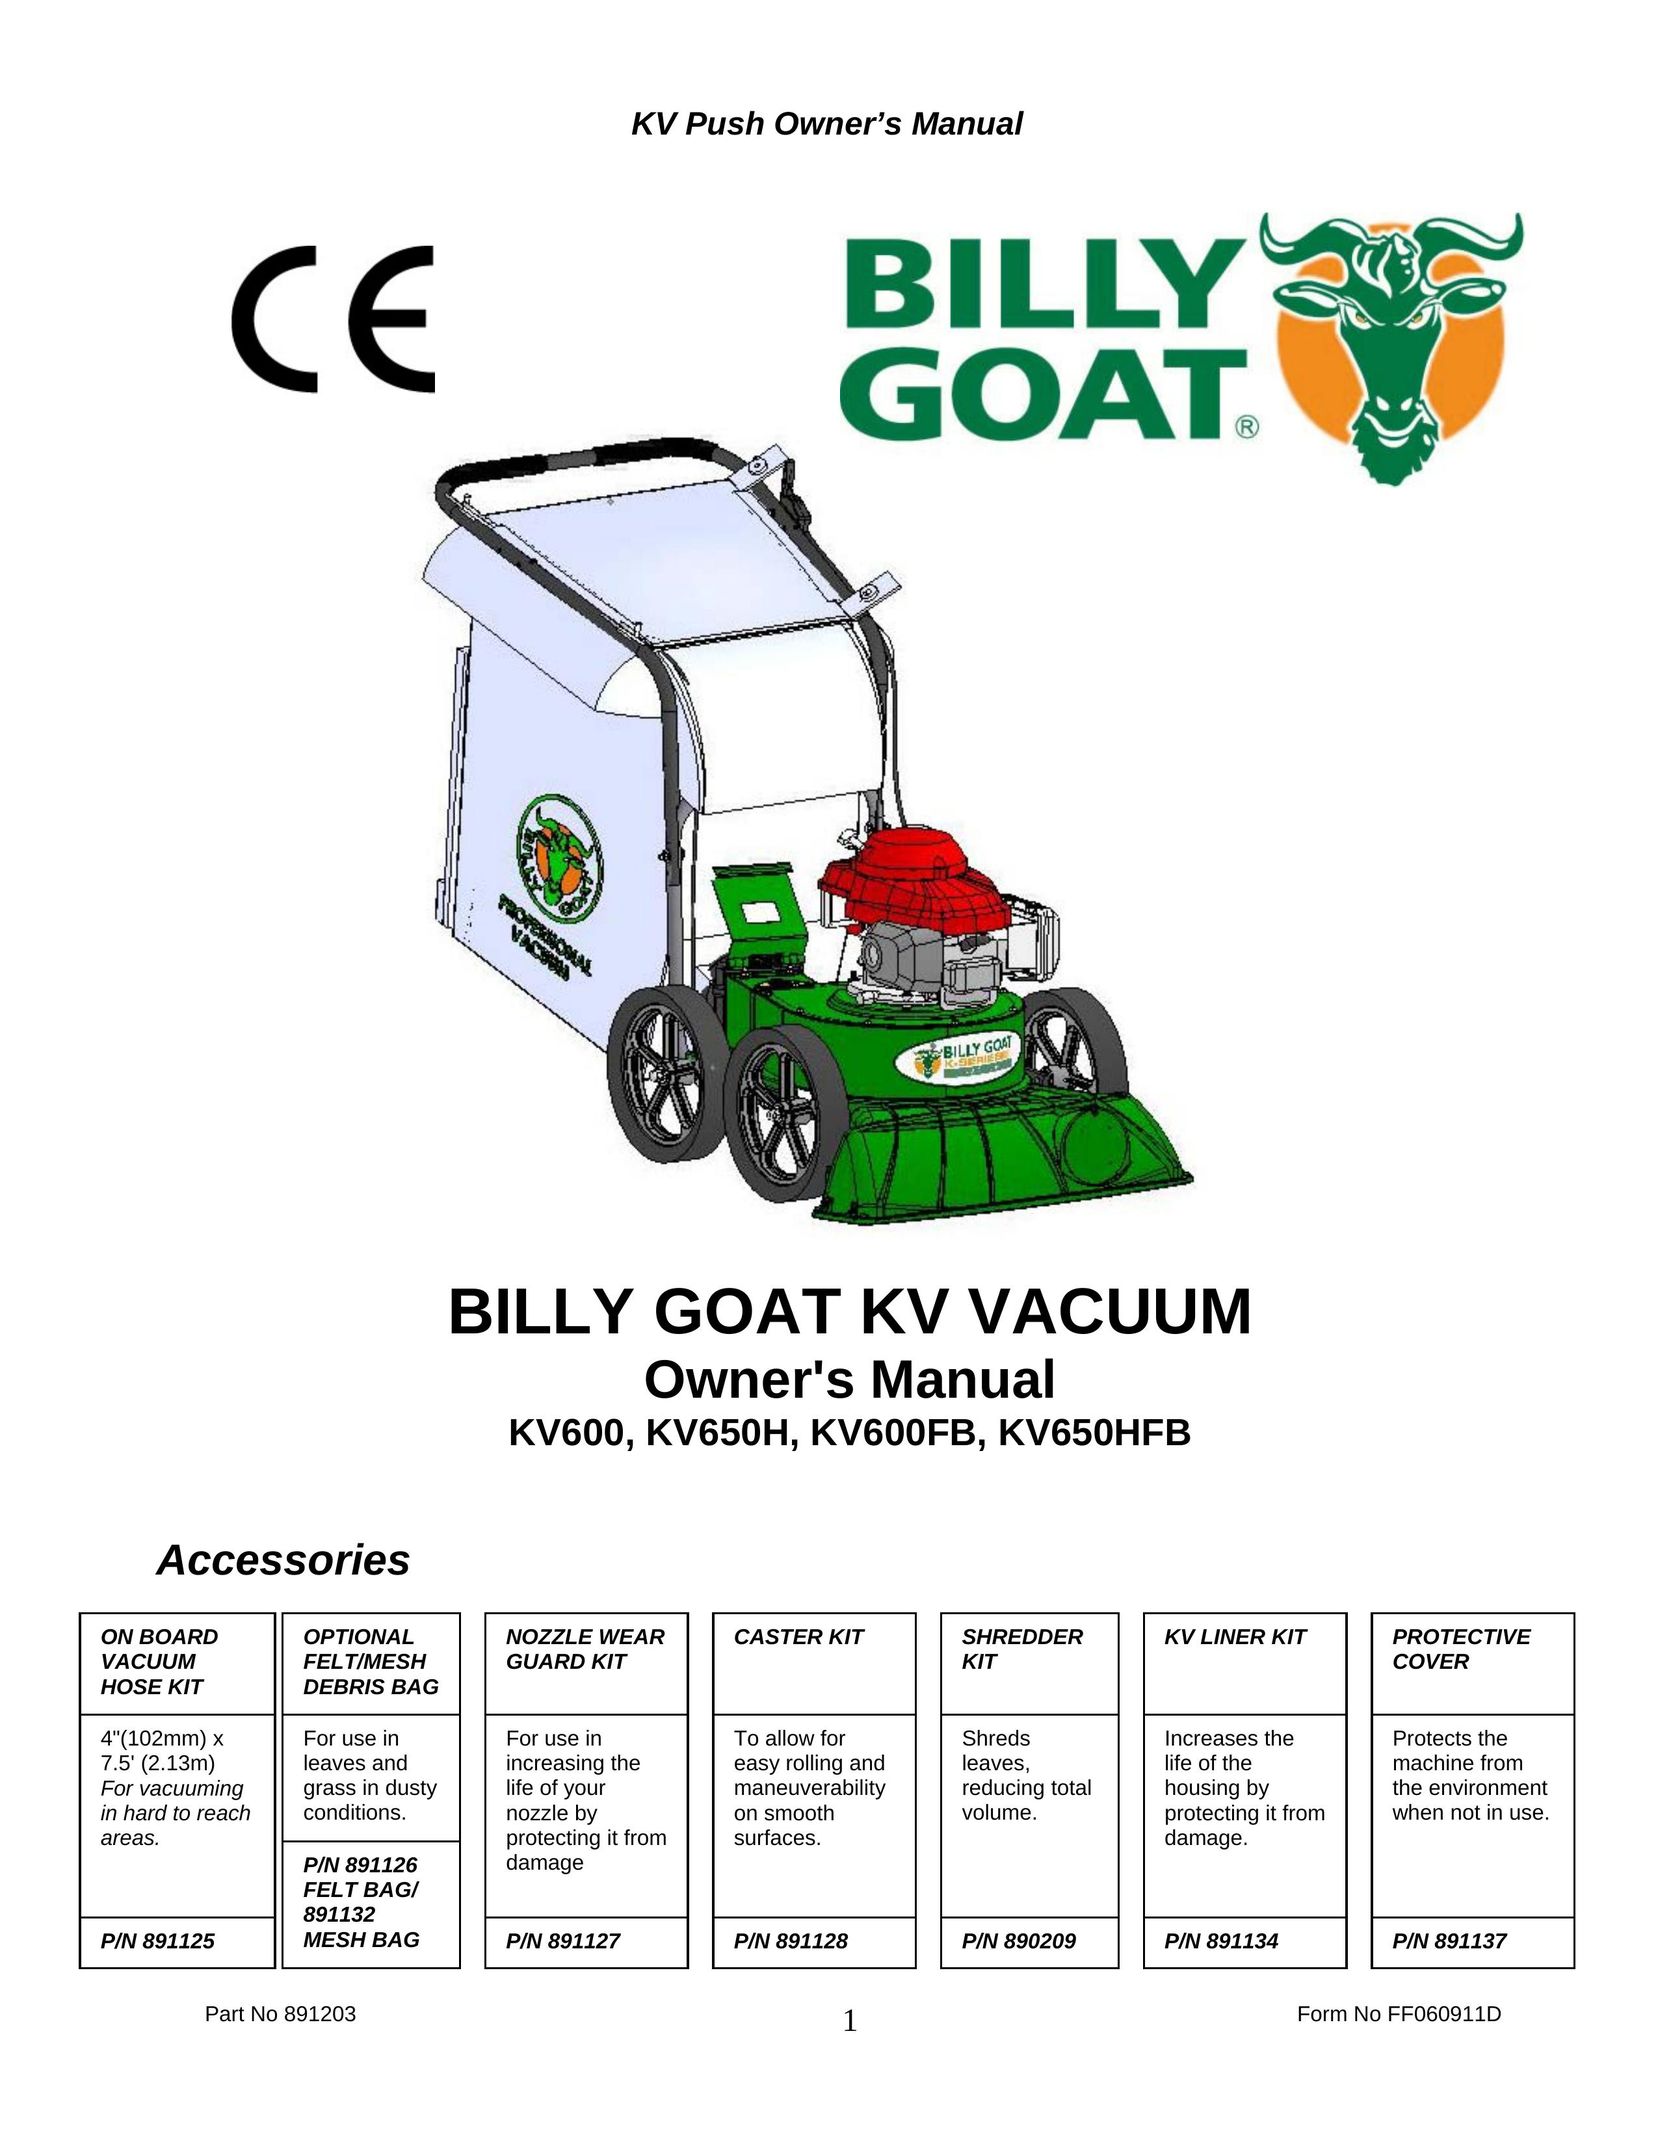 Billy Goat KV600FB Vacuum Cleaner User Manual